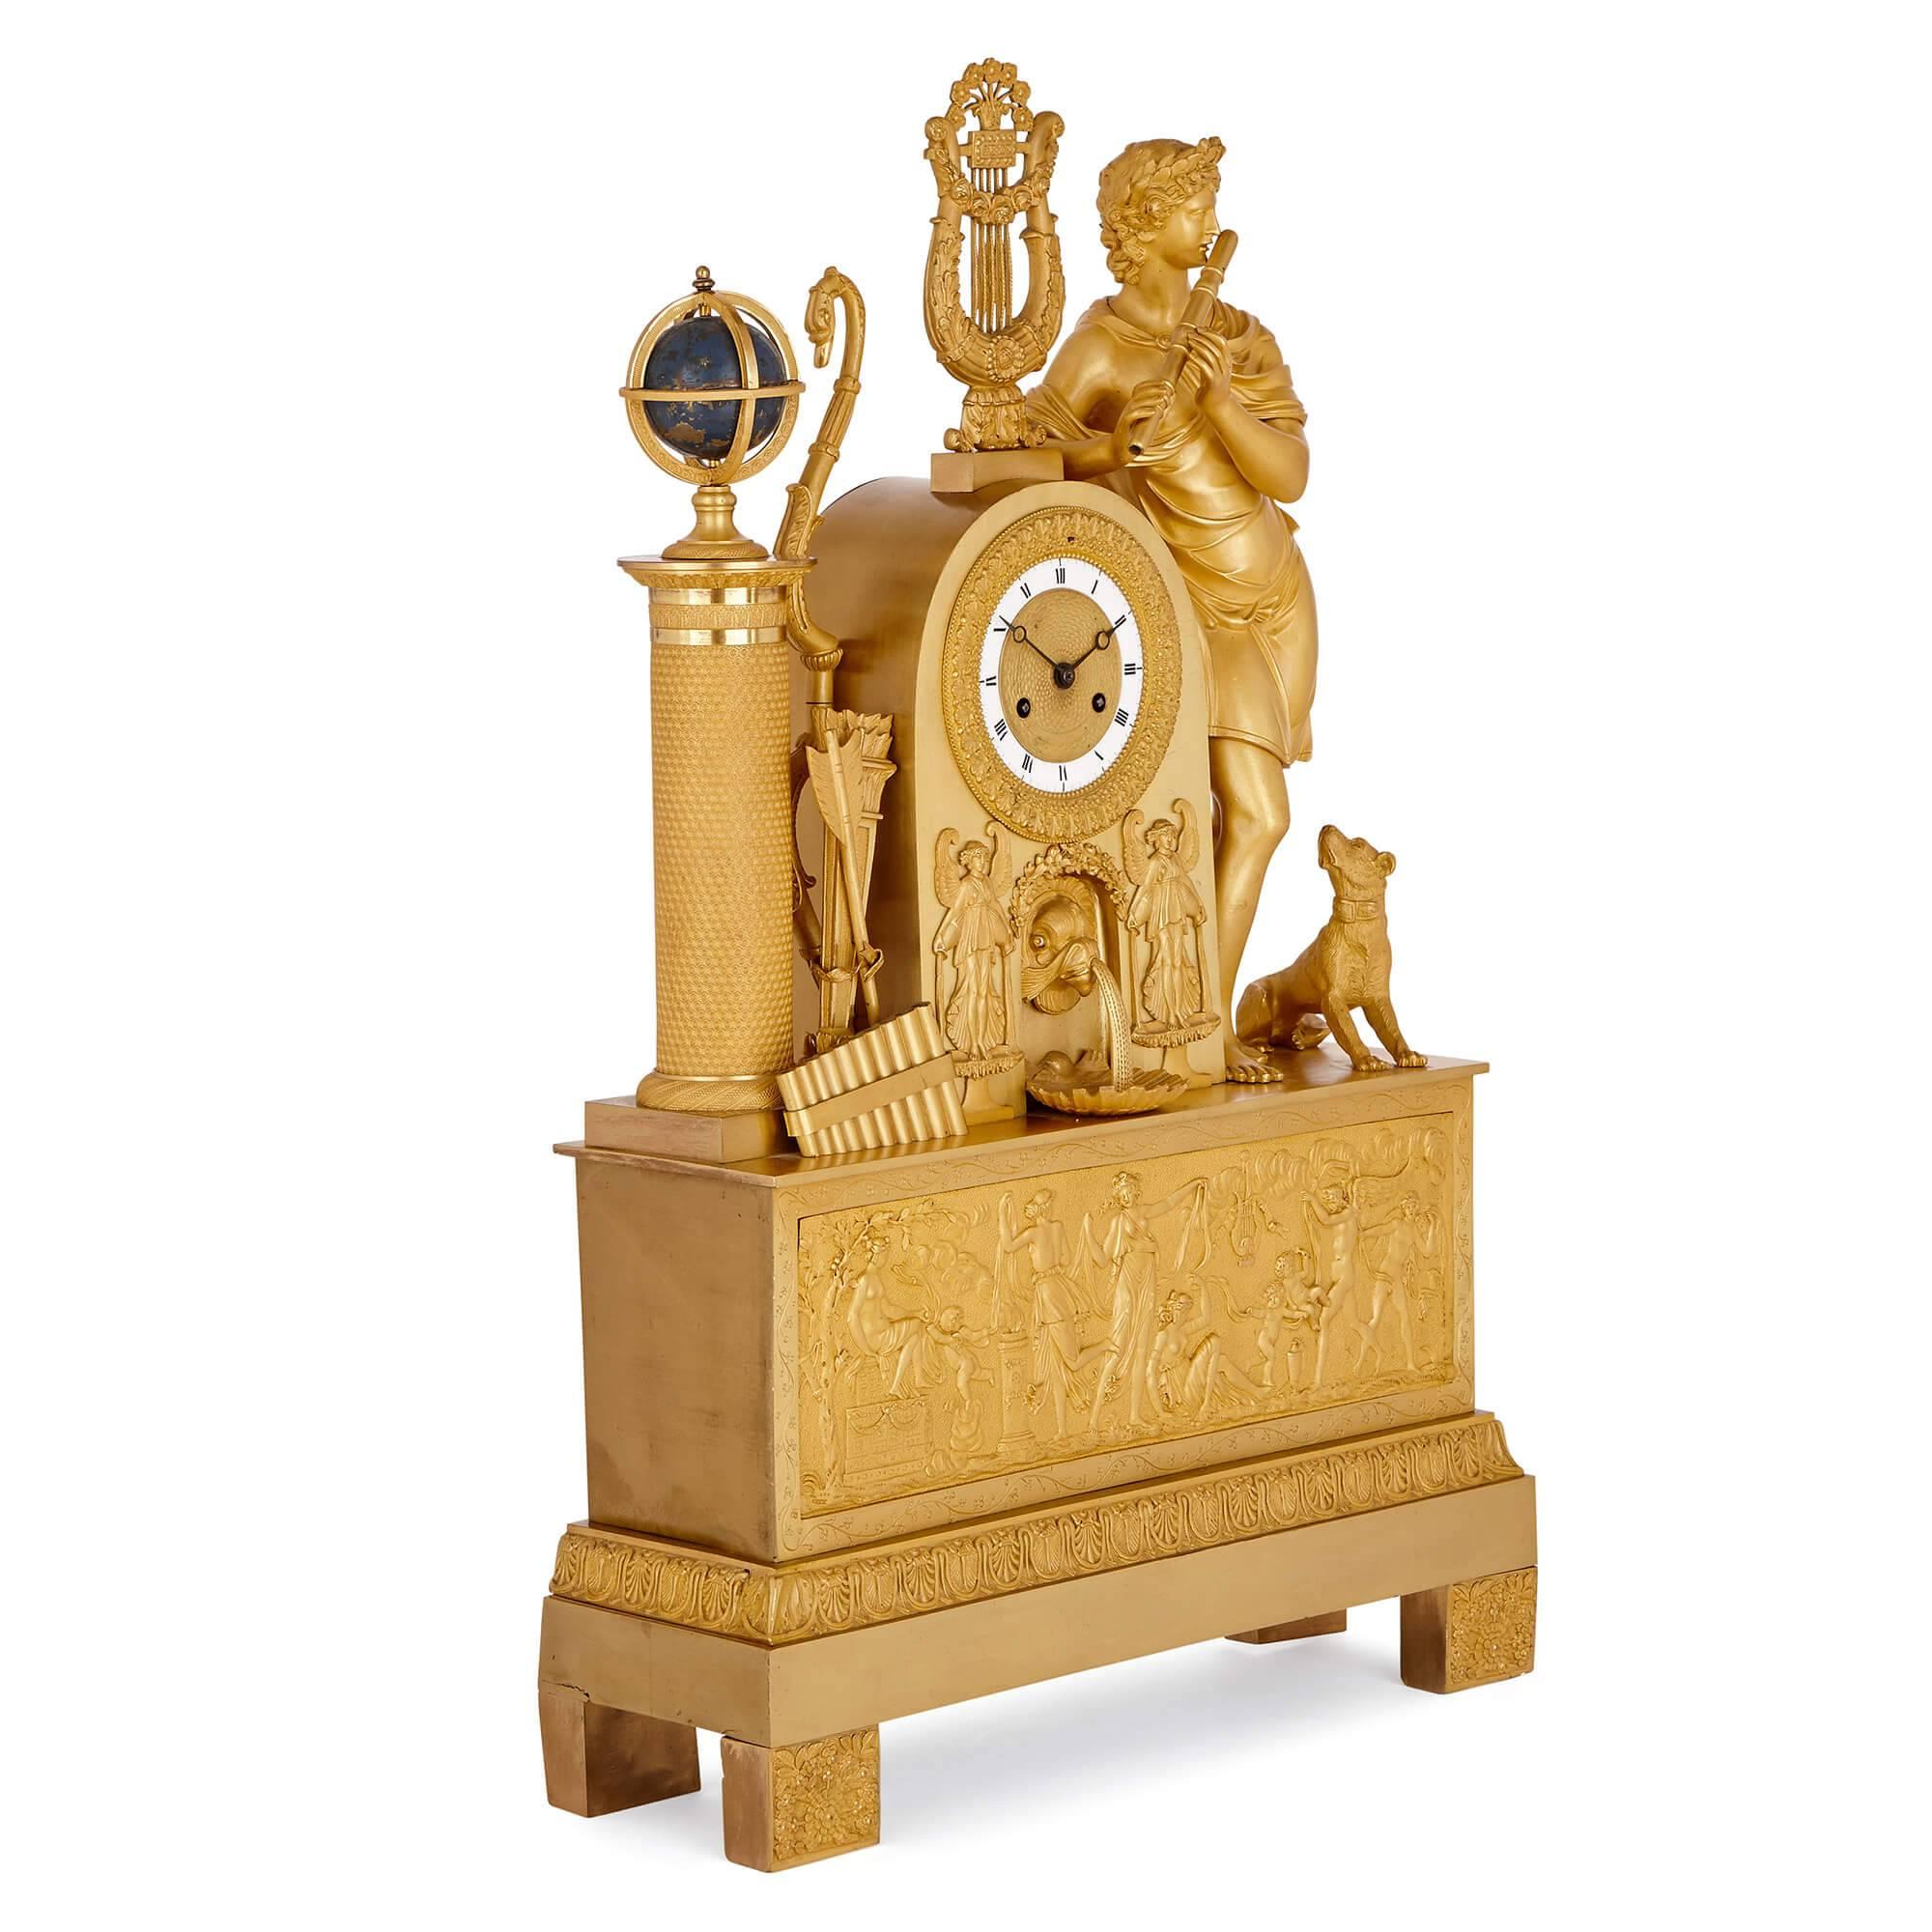 Cette superbe pendule de cheminée française a été fabriquée pendant la période Empire et reflète les intérêts néoclassiques de l'empereur Napoléon Ier, dont l'influence sur les arts décoratifs a contribué à un profond renouveau des beautés des